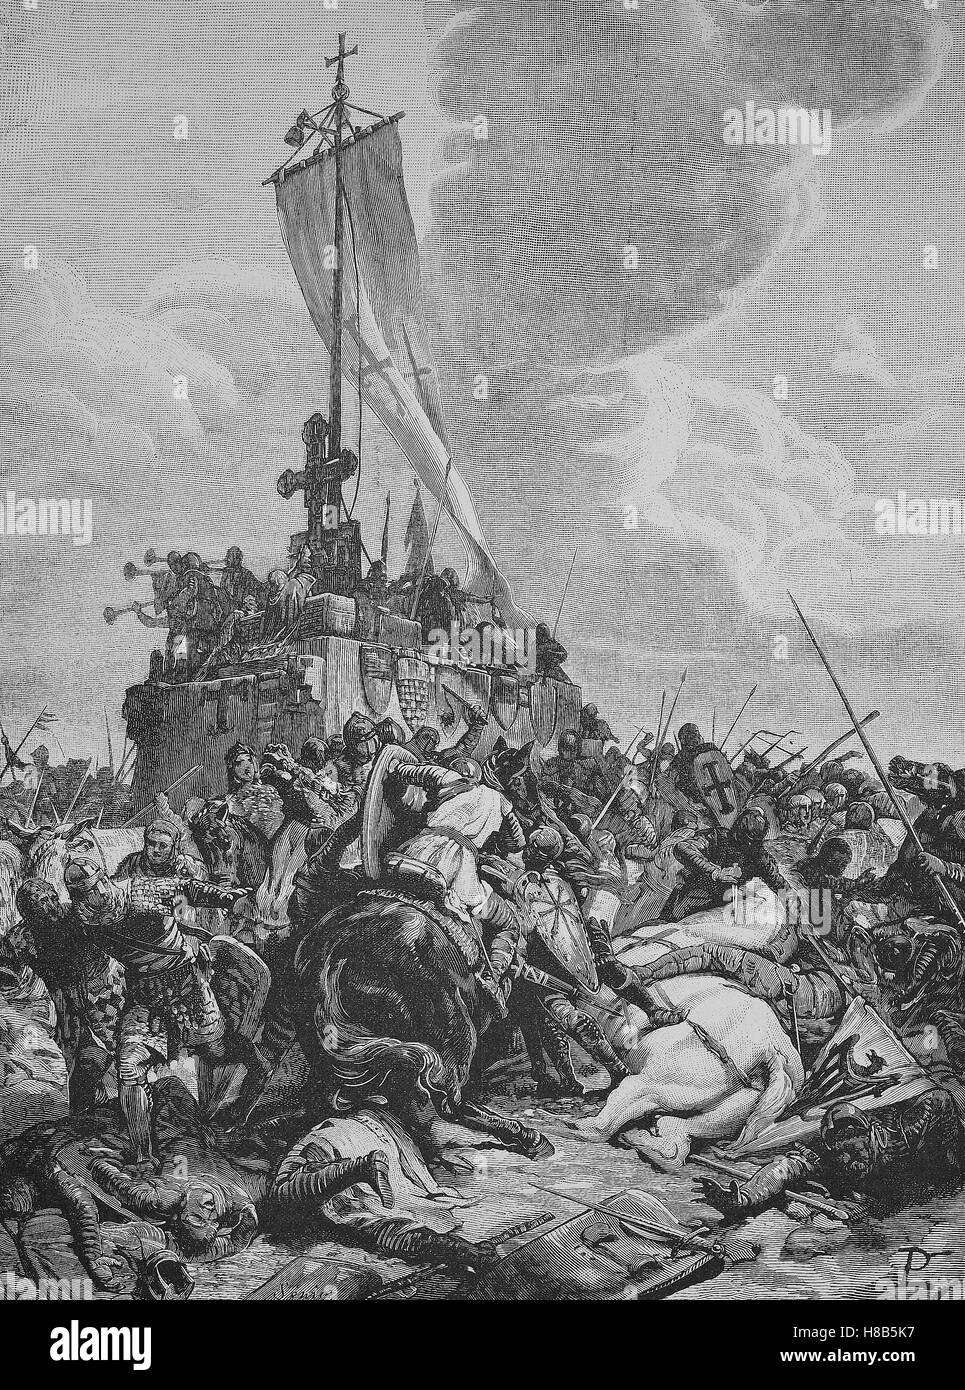 La bataille de Legnano. La bataille de Legnano eut lieu le 29 mai 1176, entre les forces de l'Empire romain saint, dirigée par l'empereur Frédéric Barberousse, et la Ligue lombarde. L'armée impériale a subi une lourde défaite, gravure sur bois de 1892 Banque D'Images